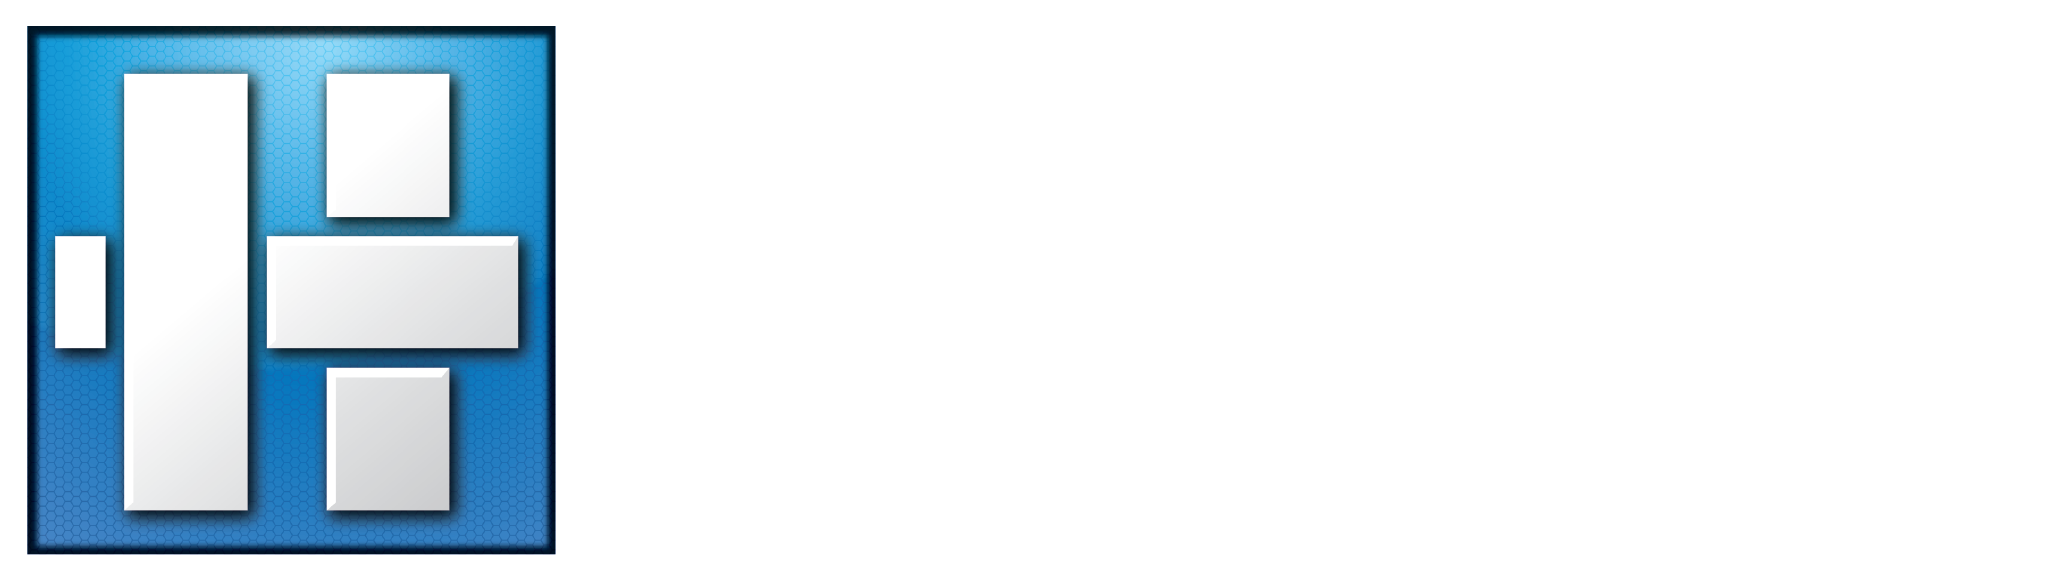 Hirsch logo (justified) wht